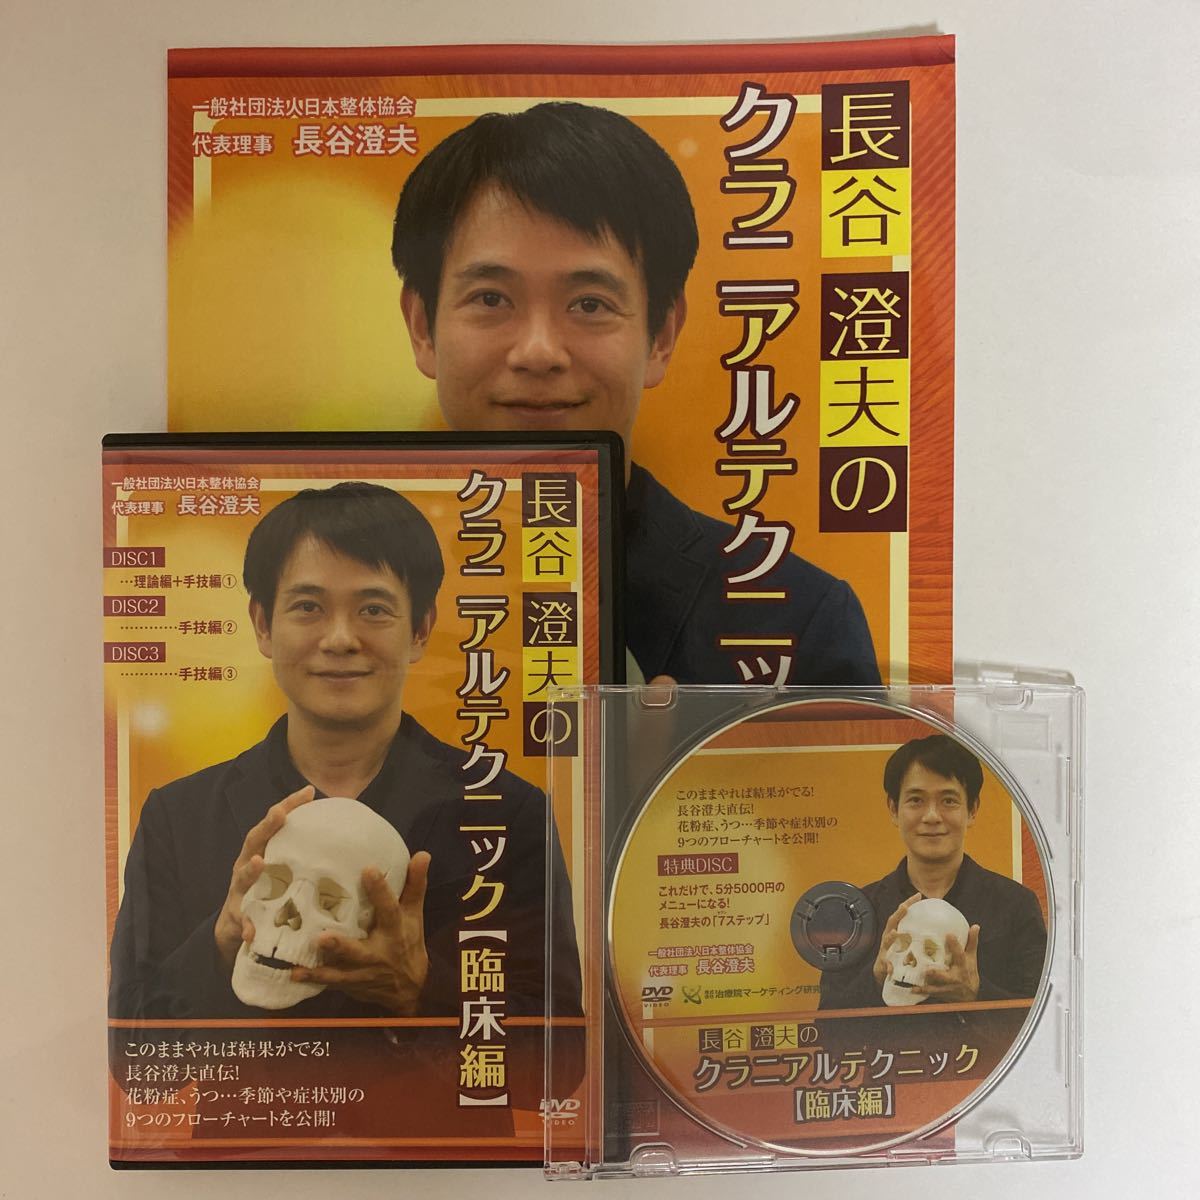 24時間以内発送 整体DVD計4枚+テキスト【長谷澄夫のクラニアル